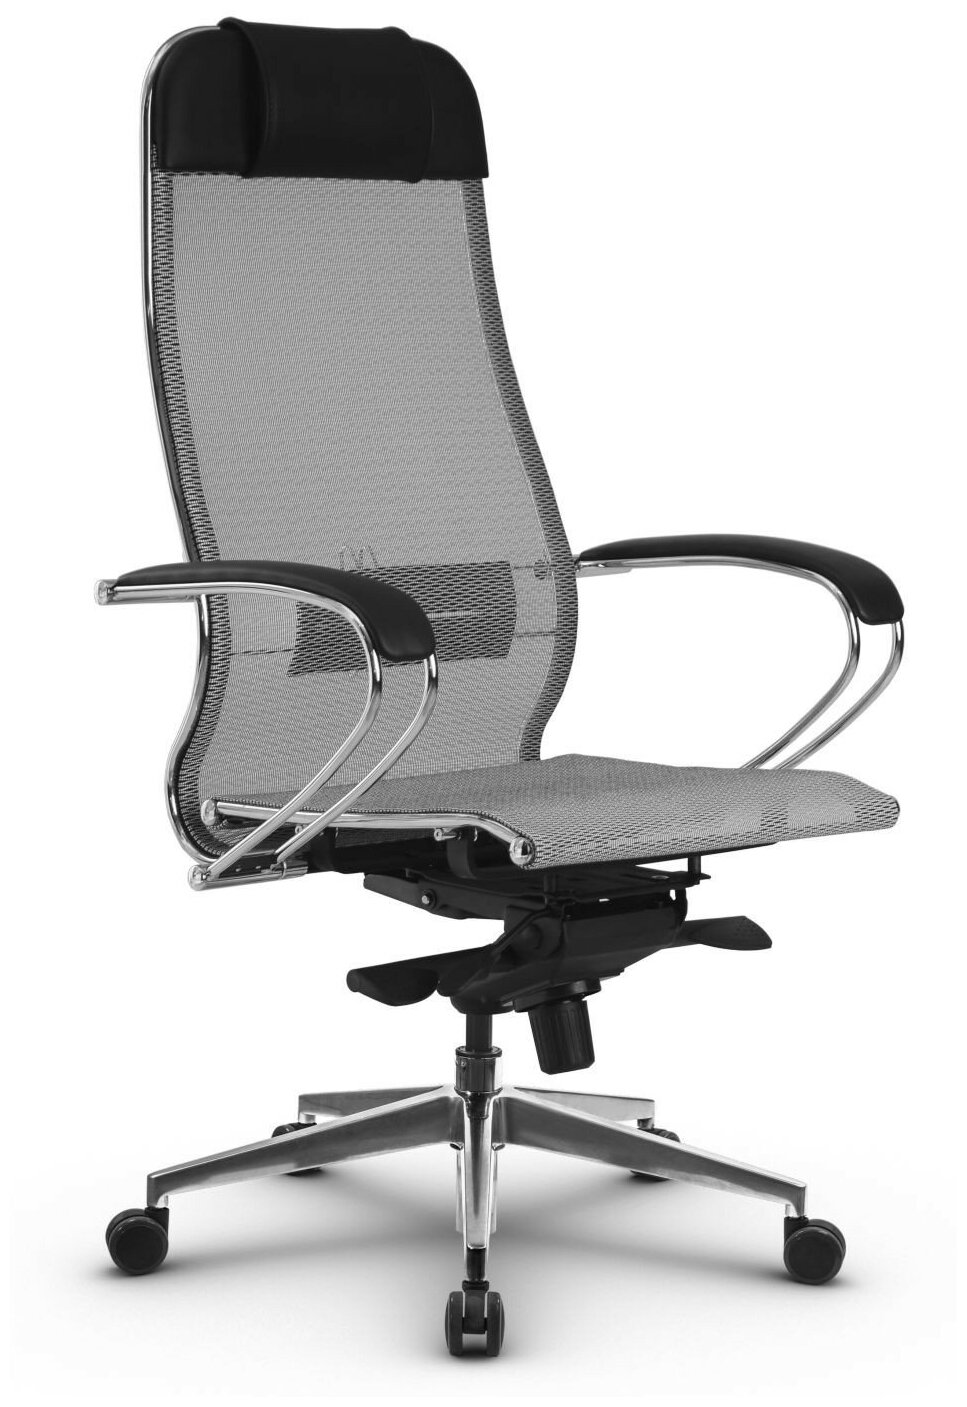 Компьютерное кресло Метта SAMURAI S-1.04 офисное обивка: текстиль цвет: серый